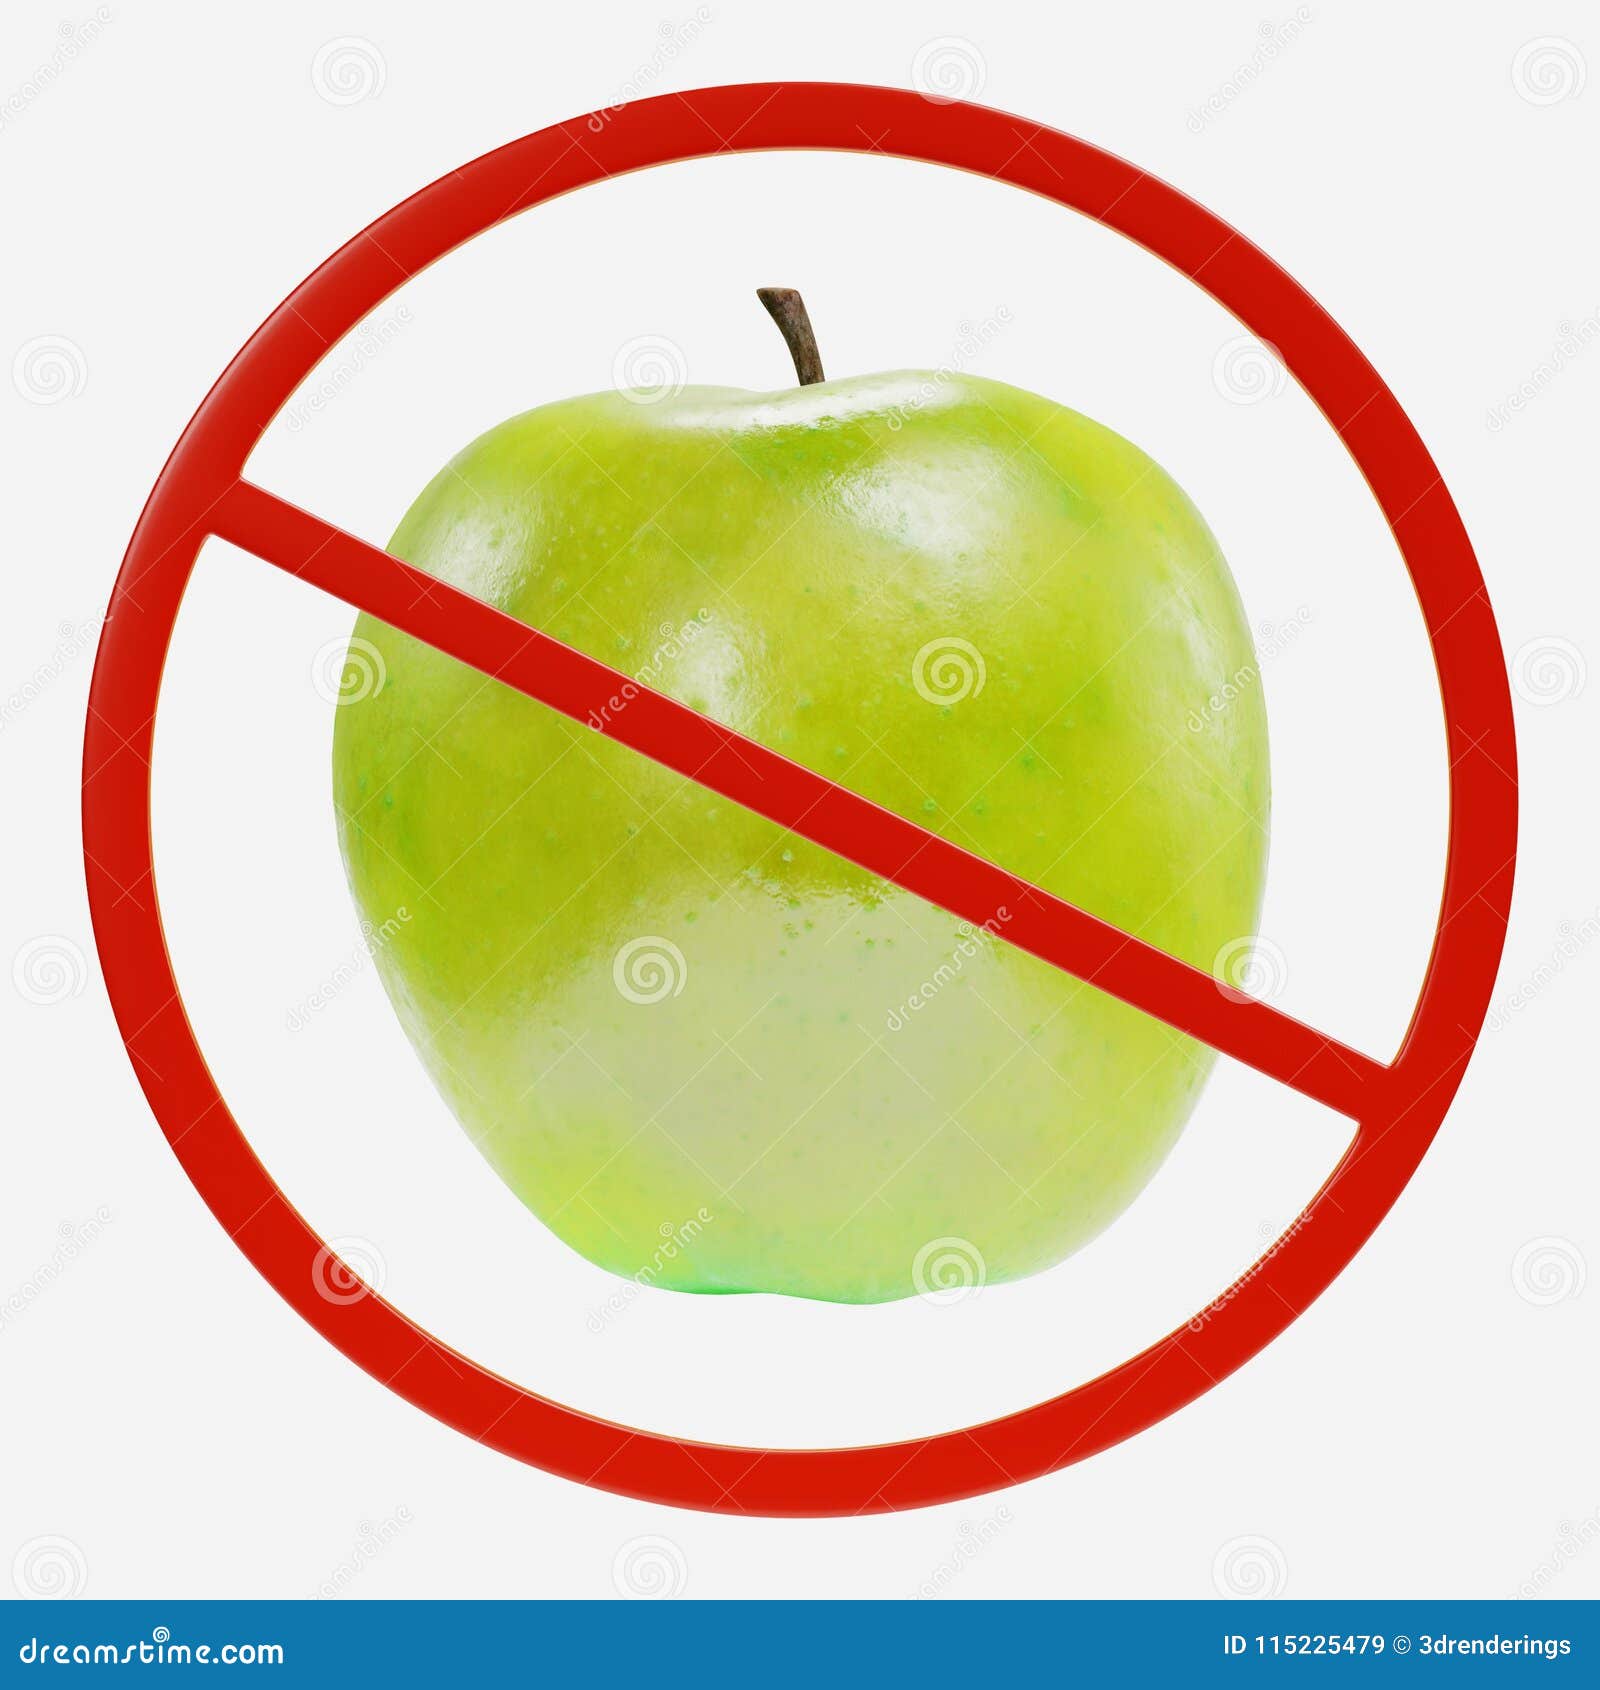 Есть ли аллергия на яблоки. Запрет на яблоки. Перечеркнутое яблоко. Значки запрещающие яблоко.